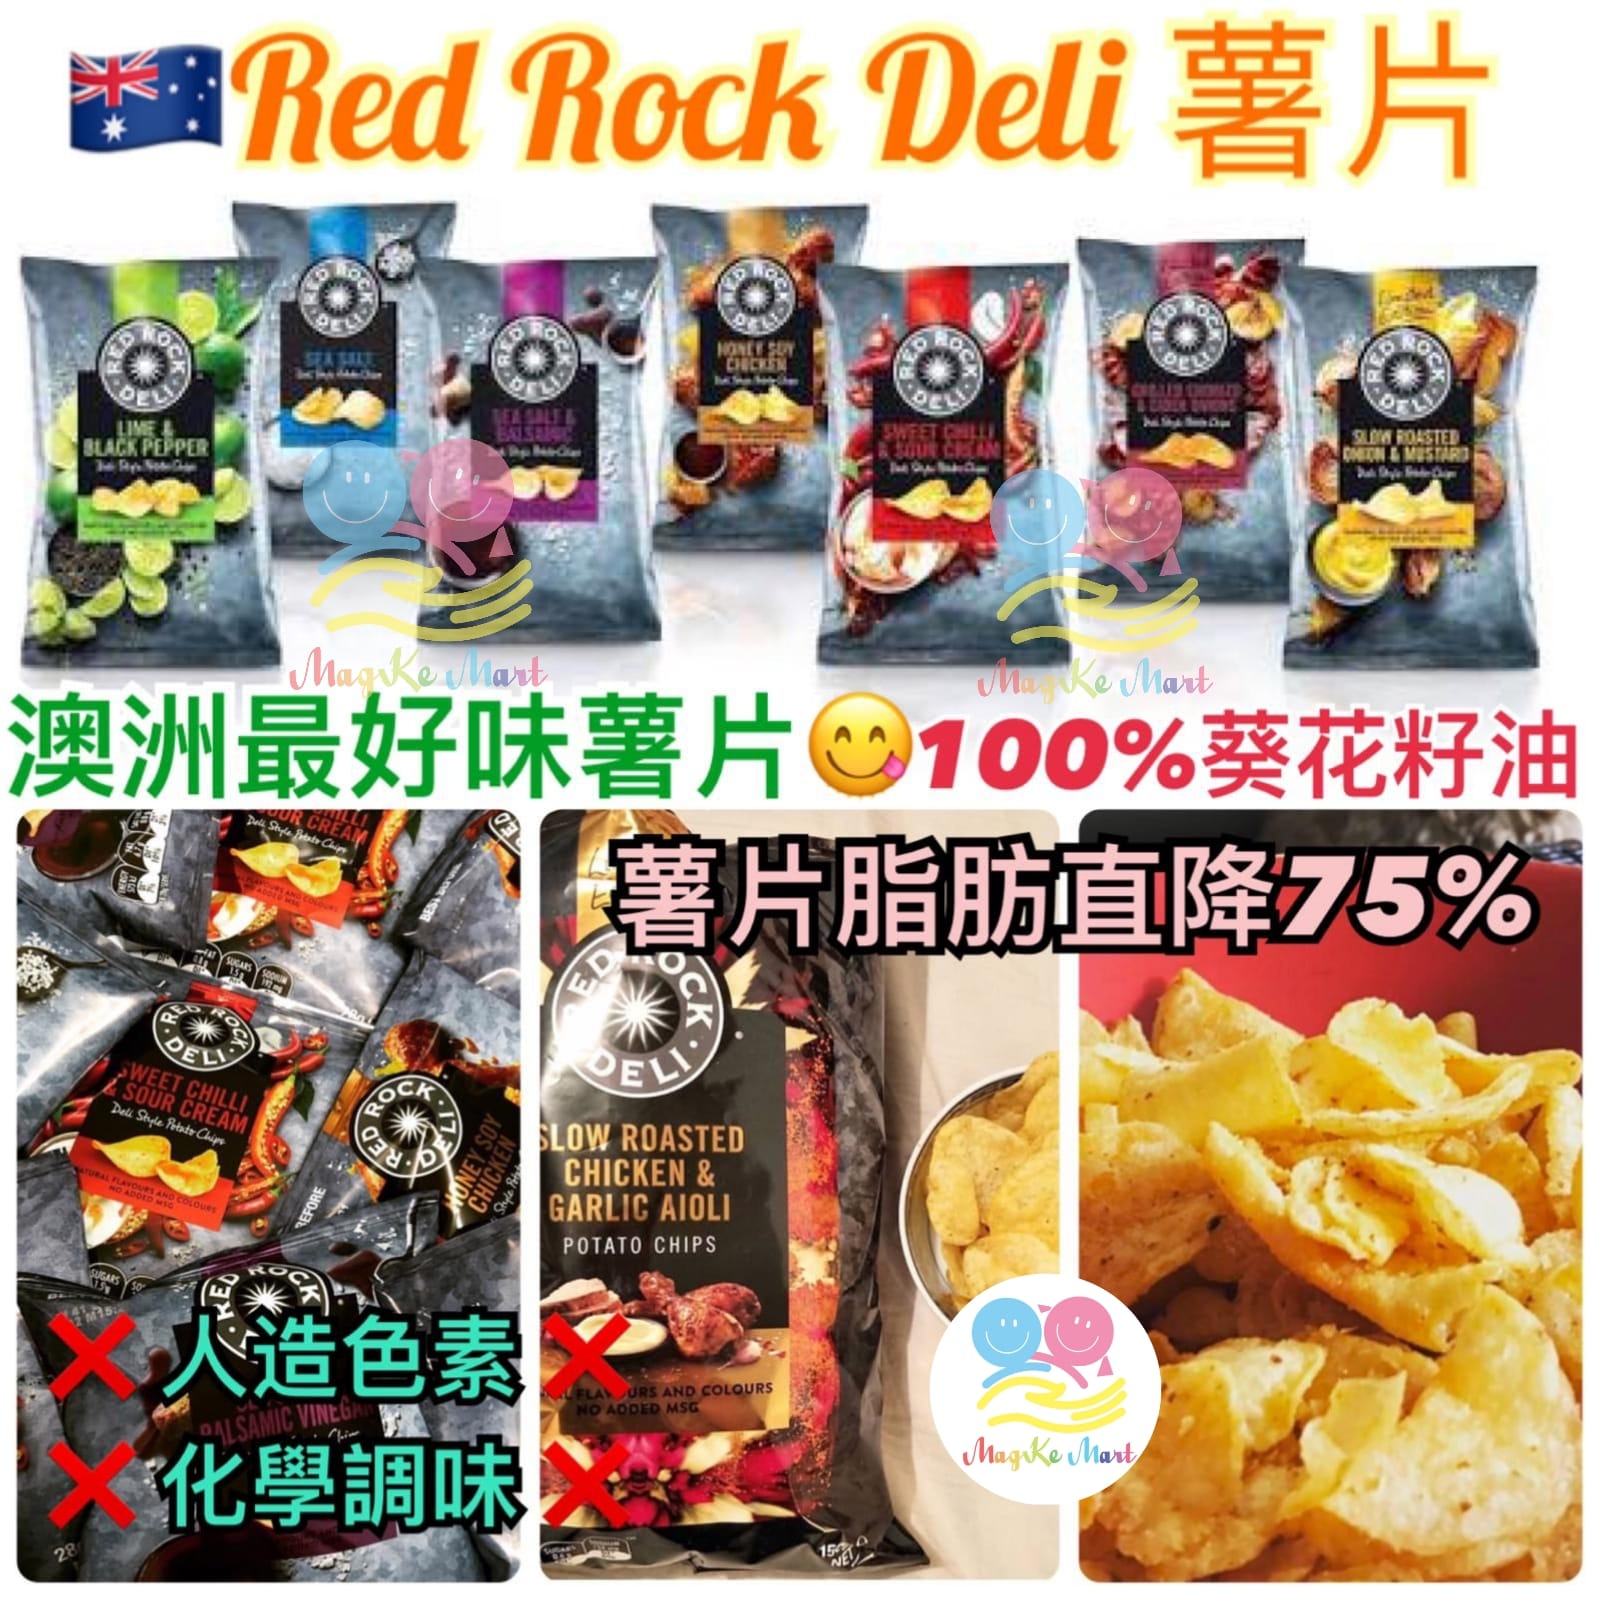 澳洲 Red Rock Deli 薯片 165g